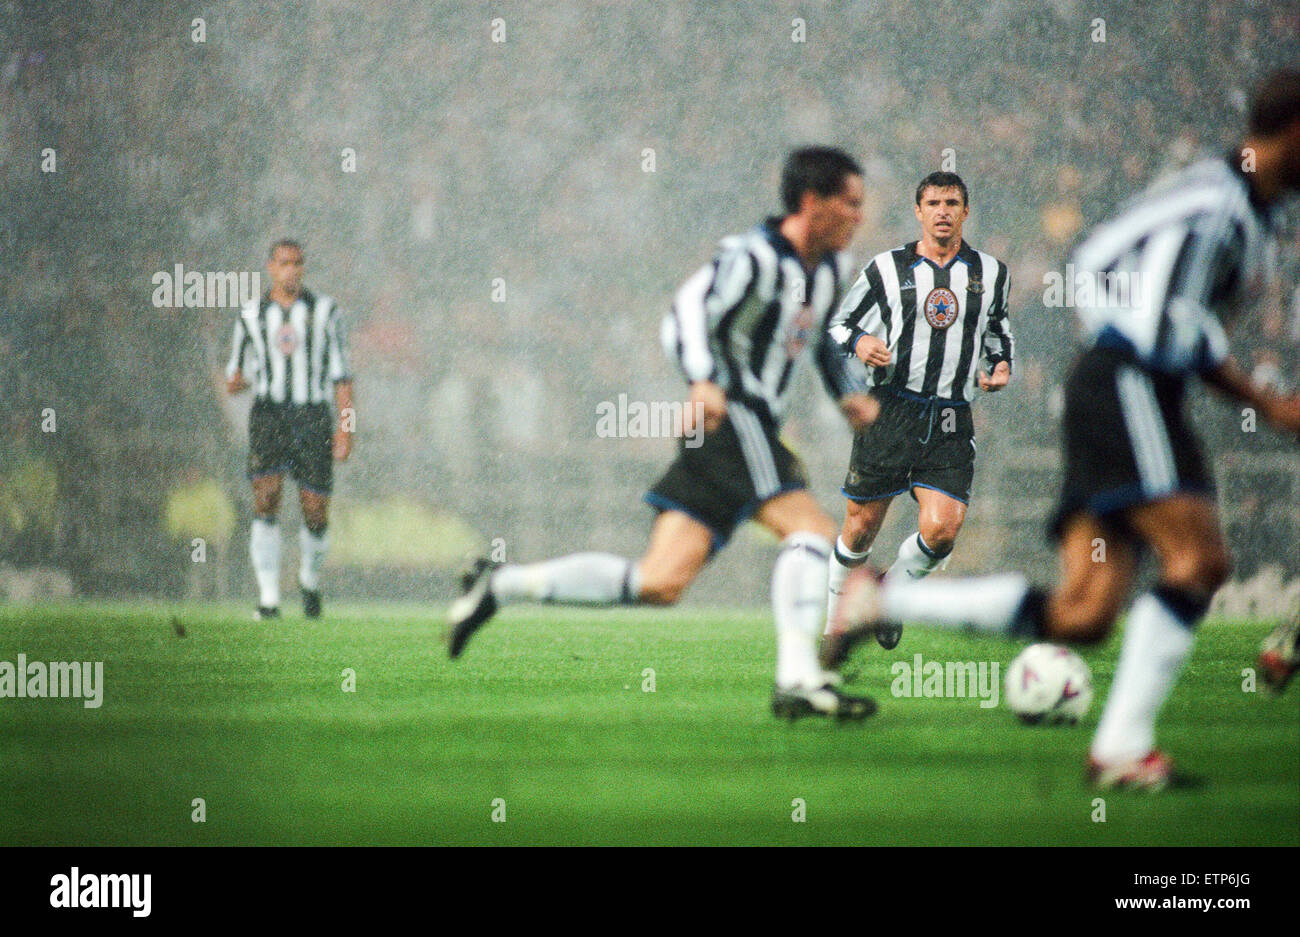 Newcastle 1-2 Sunderland, Premier league match presso il St James Park, mercoledì 25 agosto 1999. Velocità di Gary Foto Stock